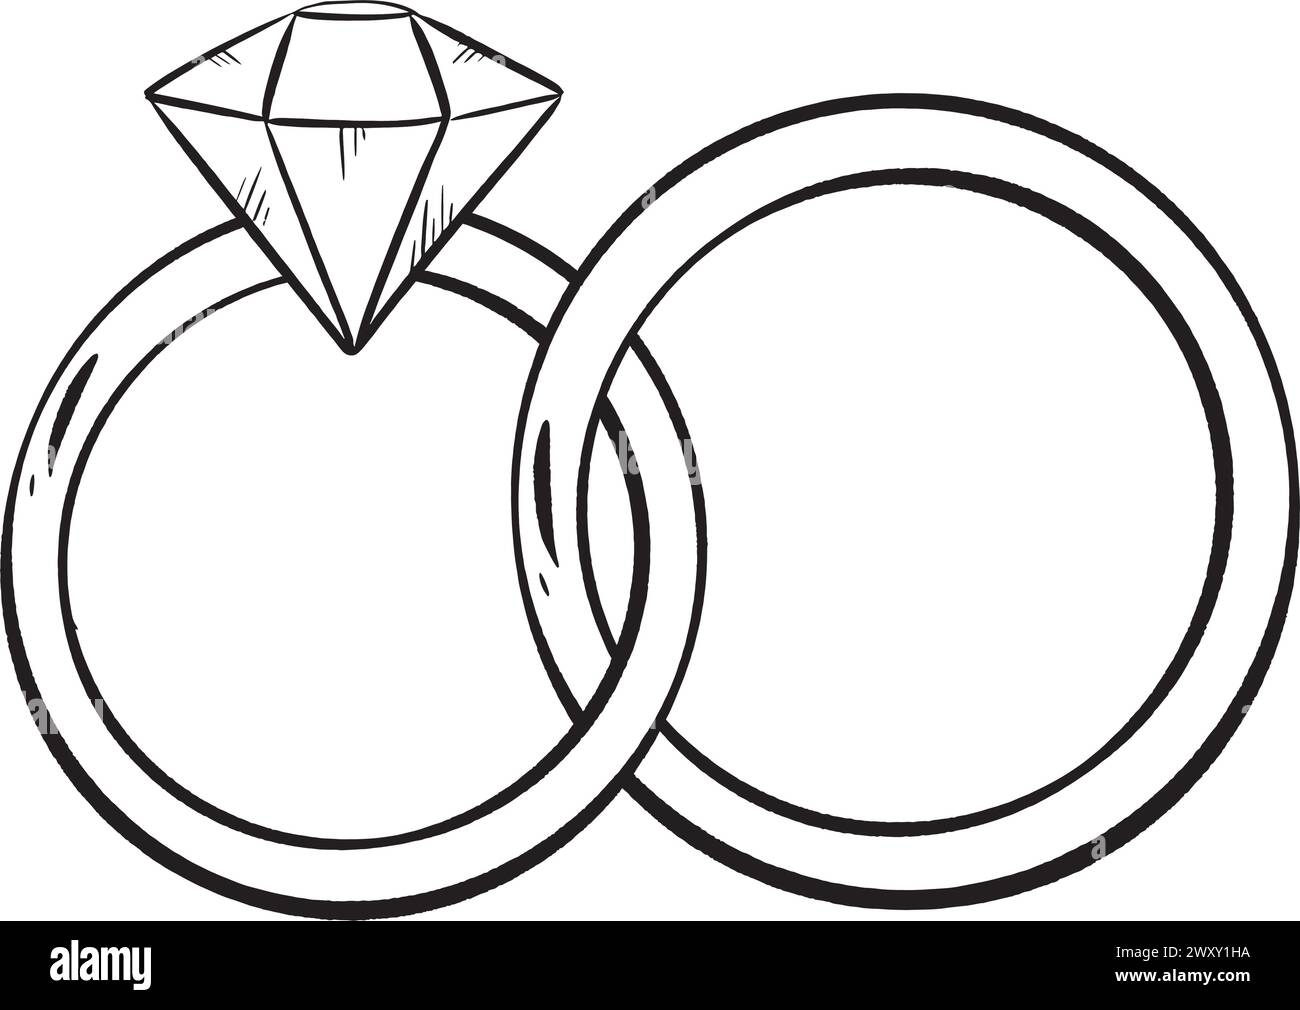 Dessin artistique noir et blanc de deux anneaux de mariage avec une pièce maîtresse de diamant Illustration de Vecteur